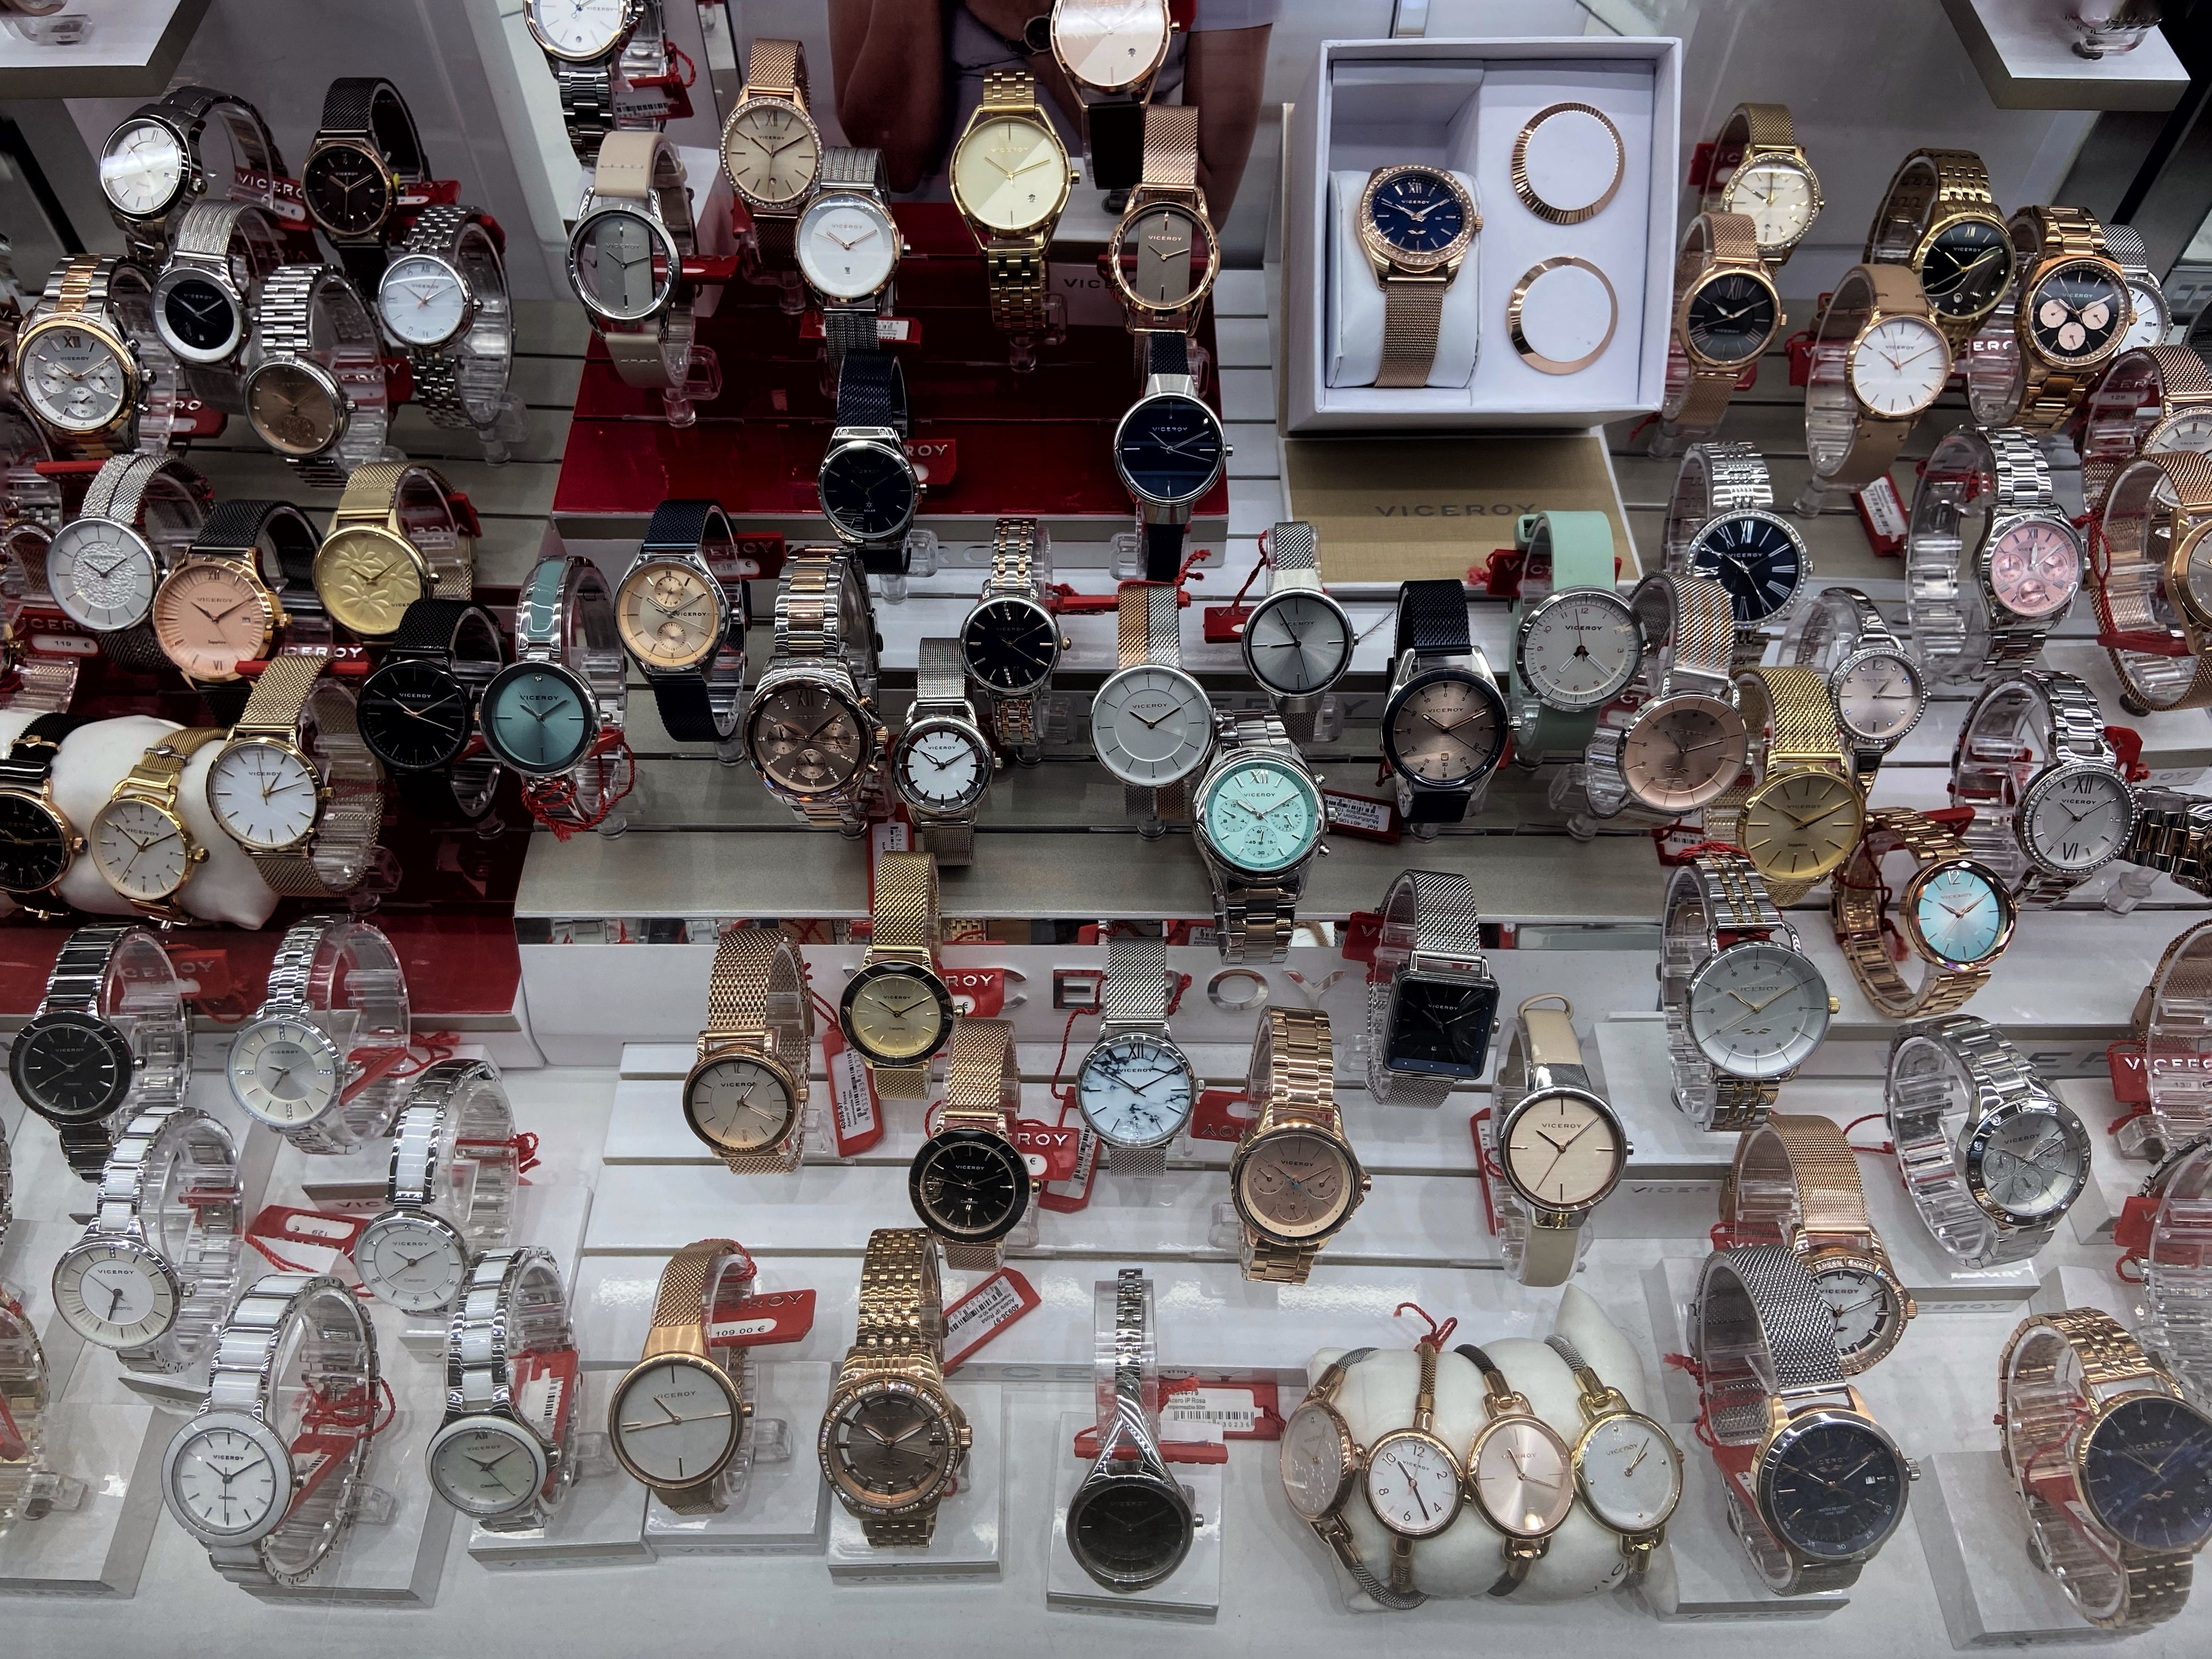 Rango Instalaciones Opuesto Precios bajos disparan compras relojes falsos por internet